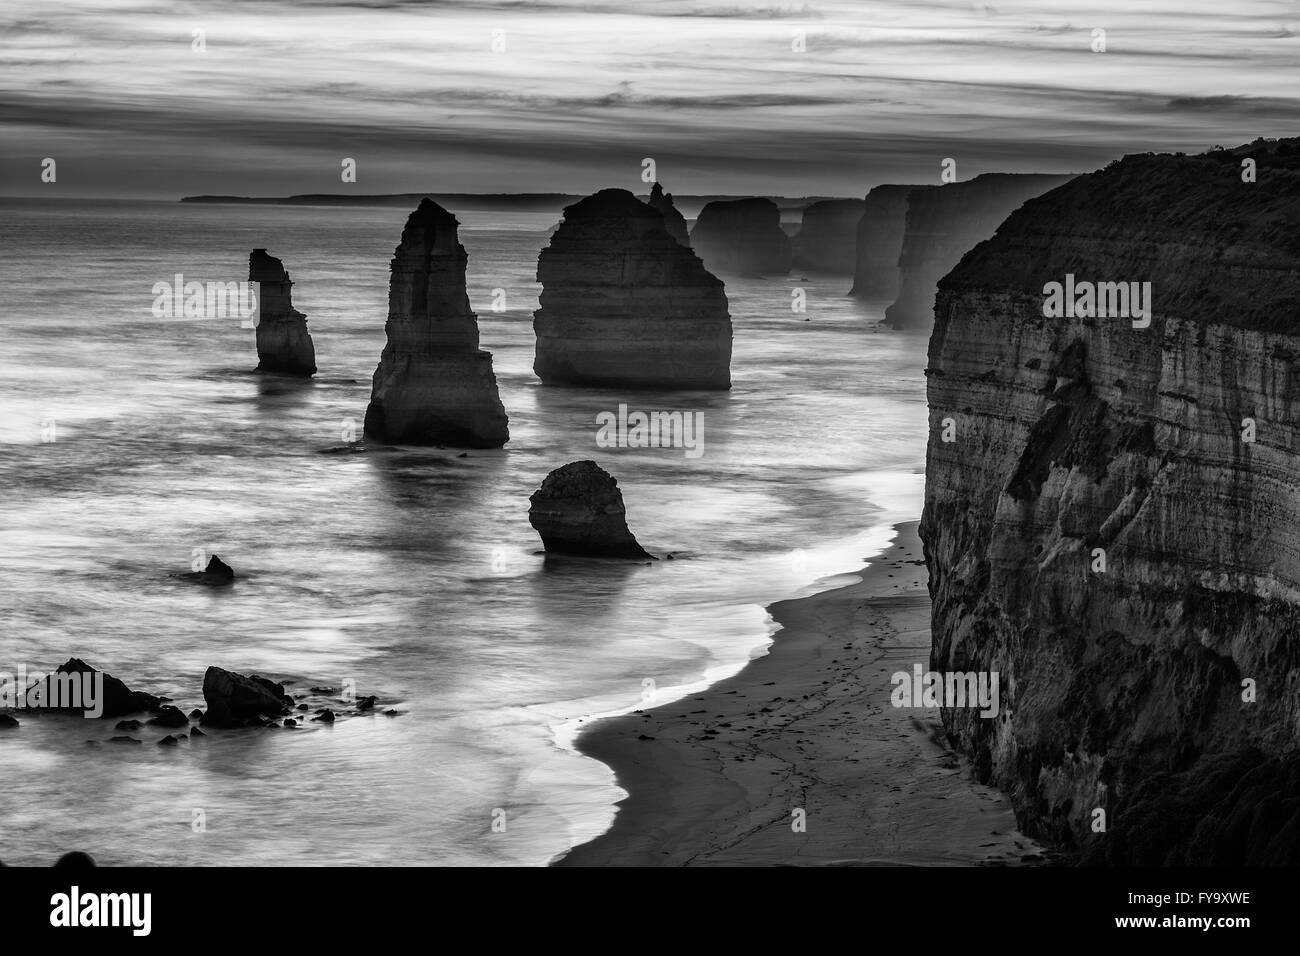 Zwölf Apostel Felsformationen, Great Ocean Road, Victoria, Australien. Schwarz / weiß Bild. Stockfoto